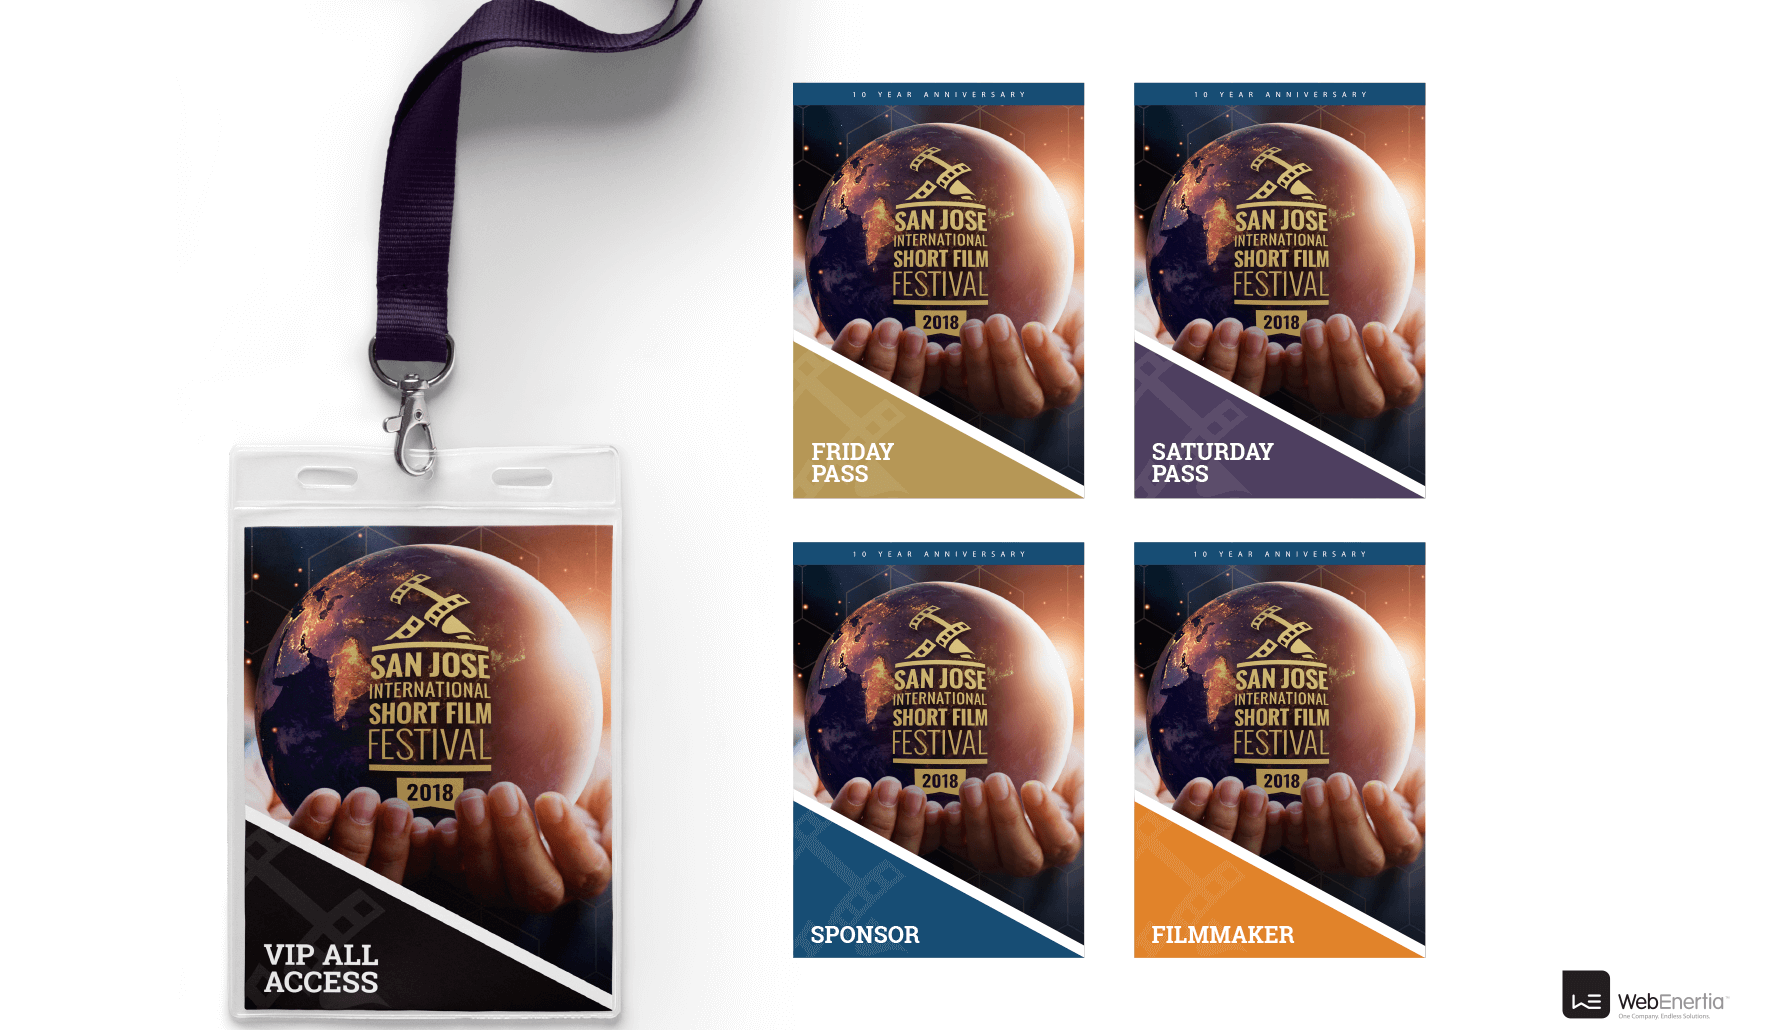 SJSSFF 2018 Campaign event access badges